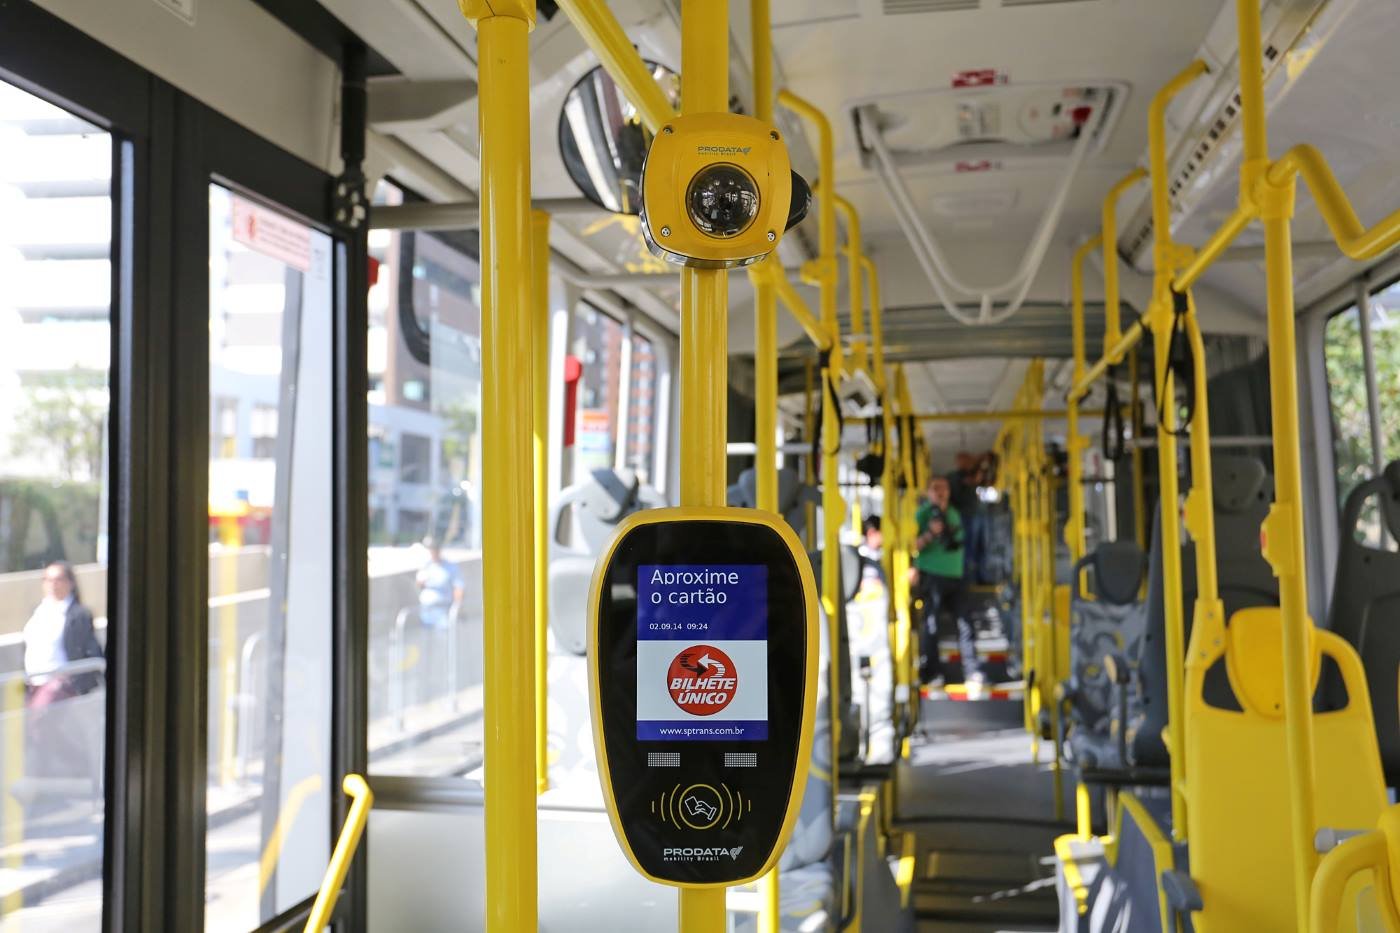 Tarifa de ônibus sobe para R$ 4,30 a partir de hoje em São Paulo - Notícias  - R7 São Paulo